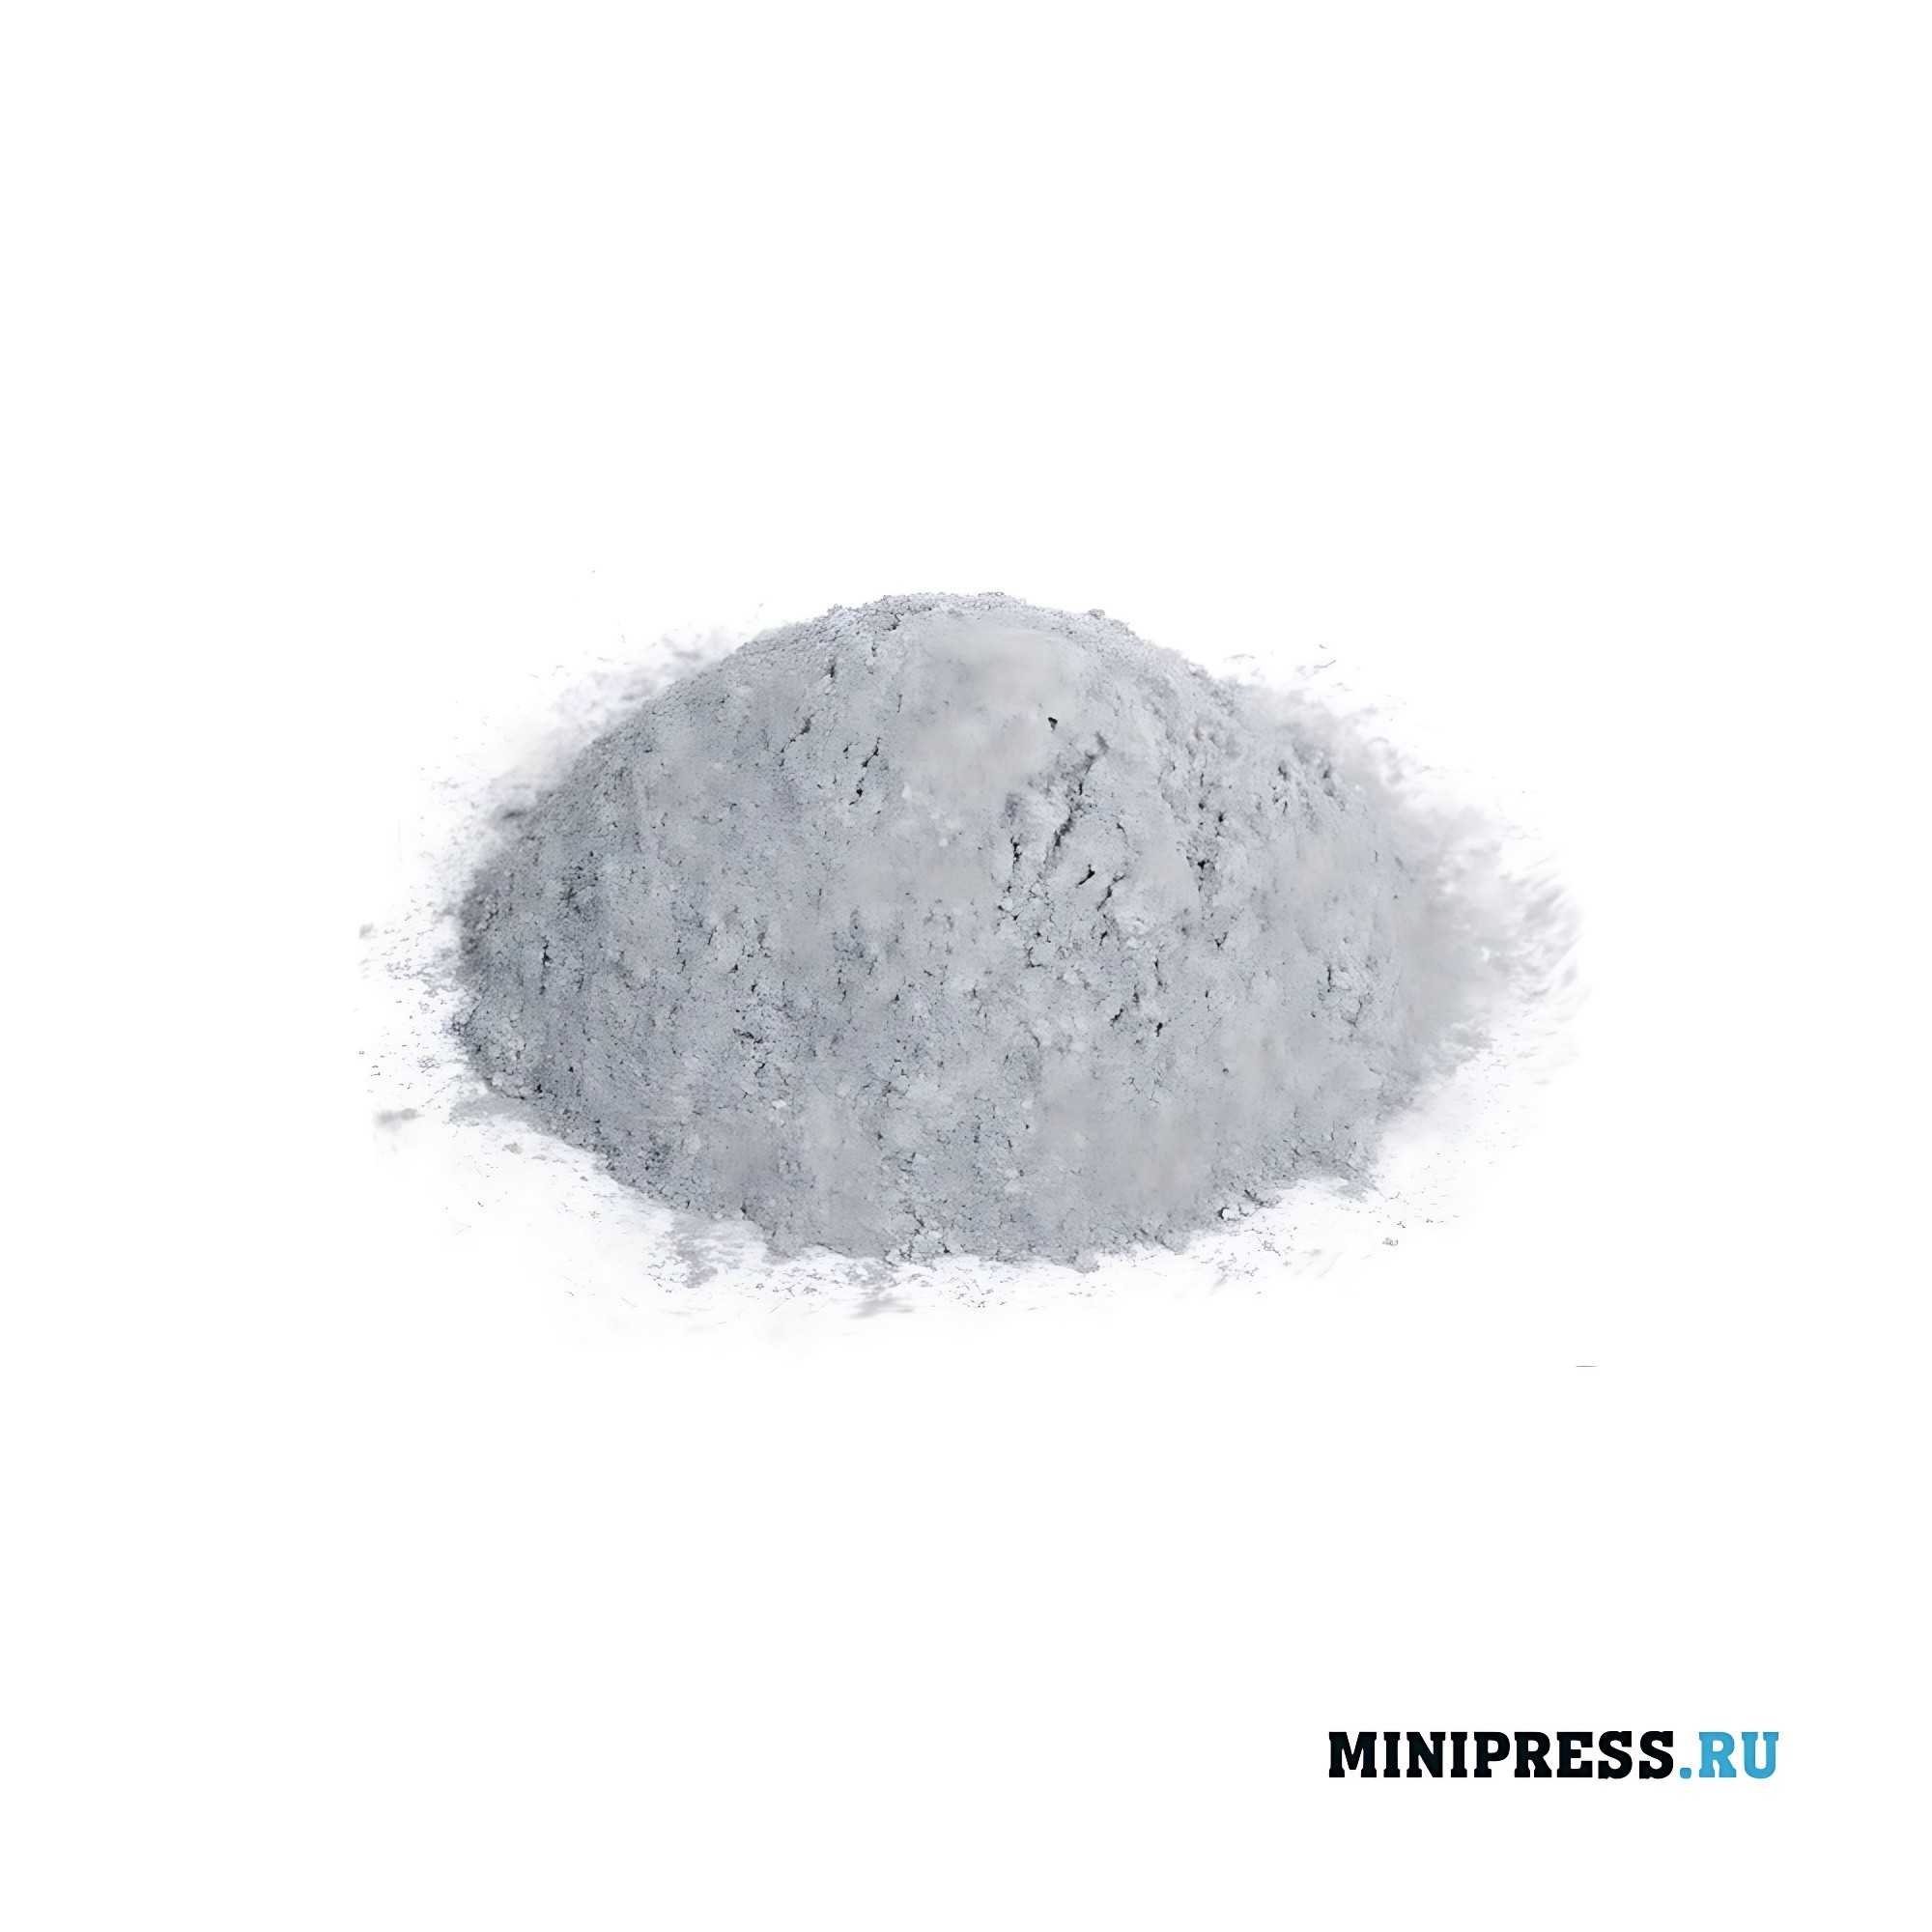 Equipo farmacéutico experimental multifuncional y mezclador de polvo en forma de V UNIDAD 2